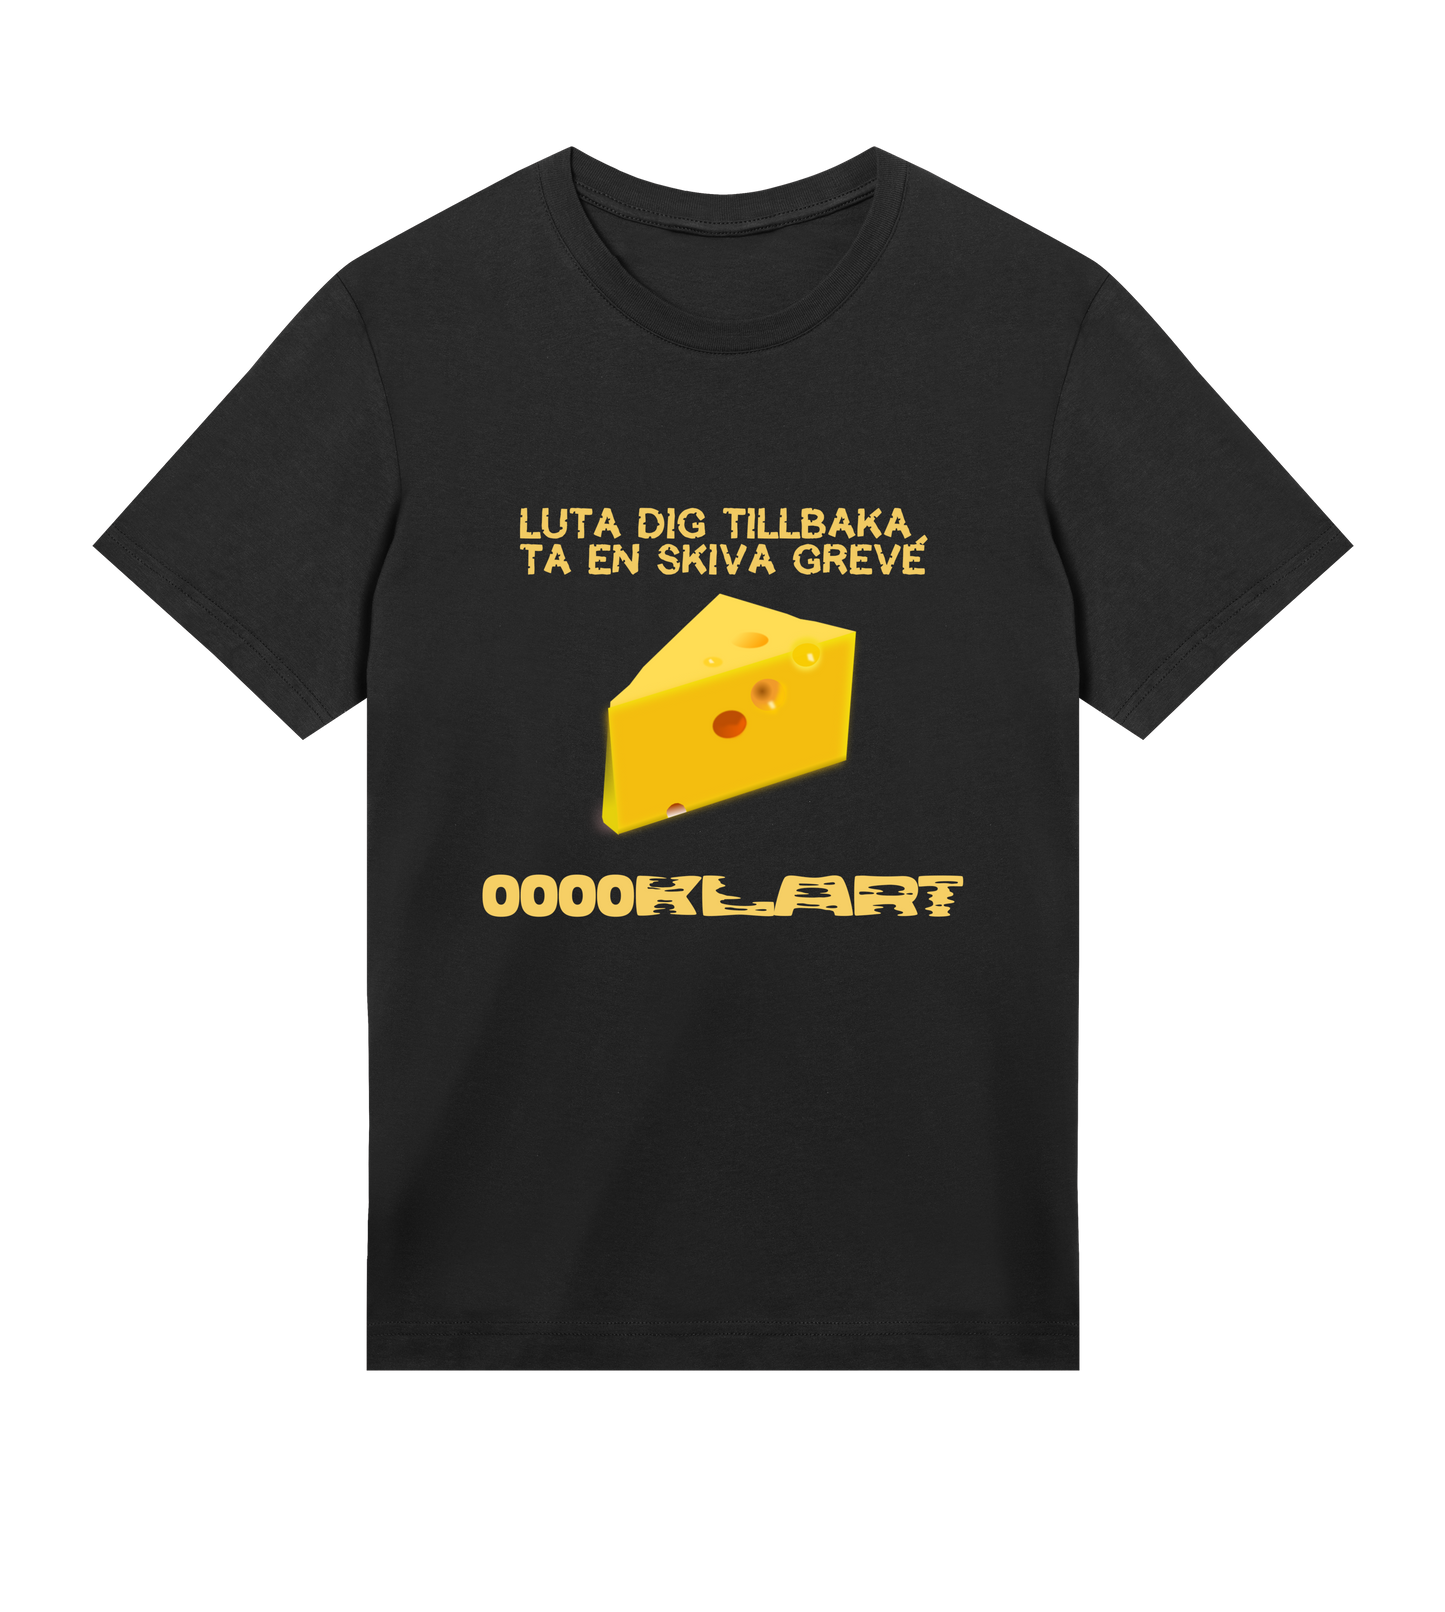 Ooooklart - Cheese Men's T-shirt